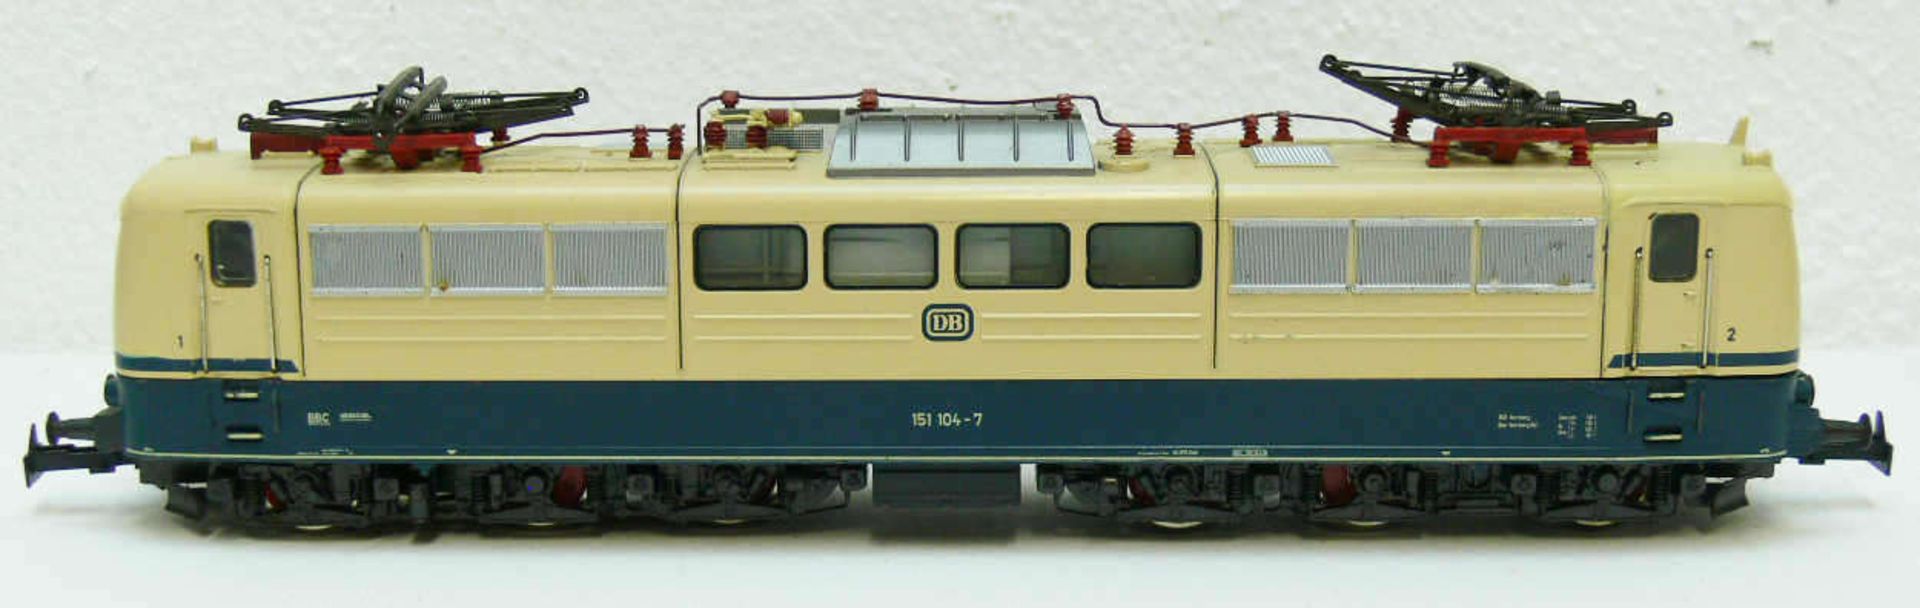 Märklin E - Lokomotive BR 151 der DB. BN 151 104-7. Ohne OVP. Sehr guter Zustand mit leichten